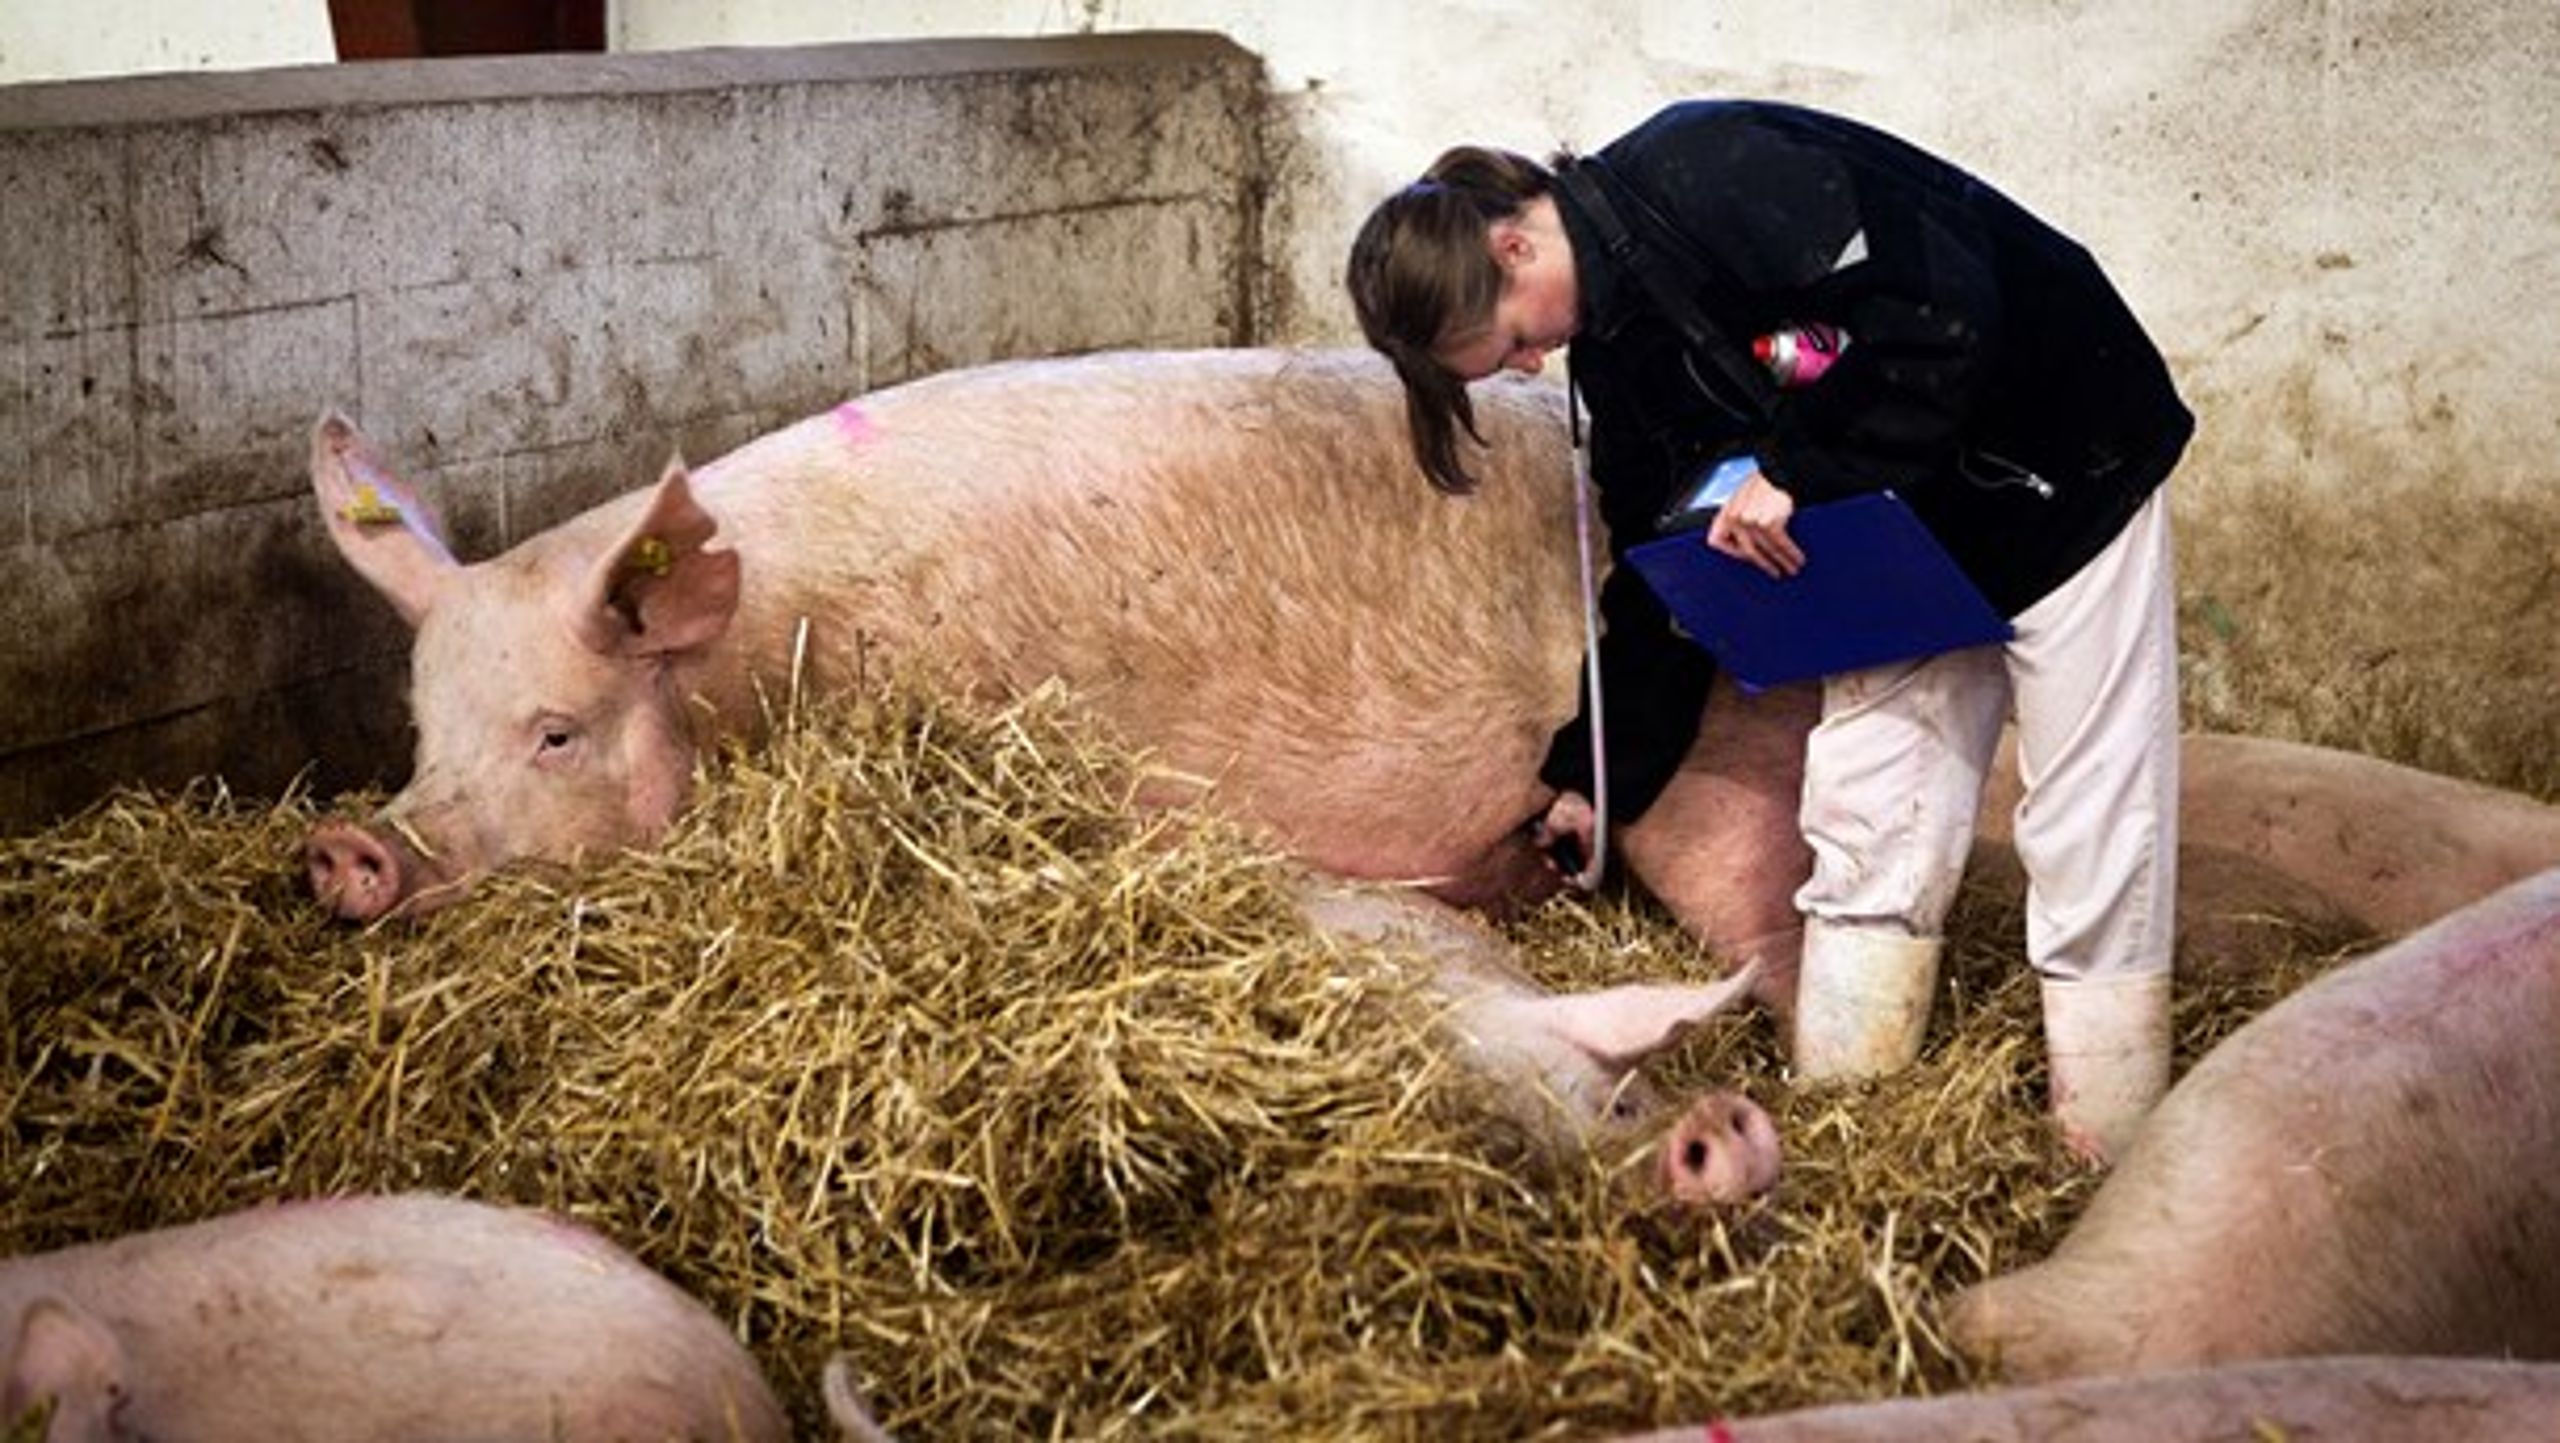 Med henvisning til en EU-rapport hævder Landbrug &amp; Fødevarer, at danske svin får mindre antibiotika end svin i andre lande. Men forskere siger, at landene ikke kan sammenlignes.